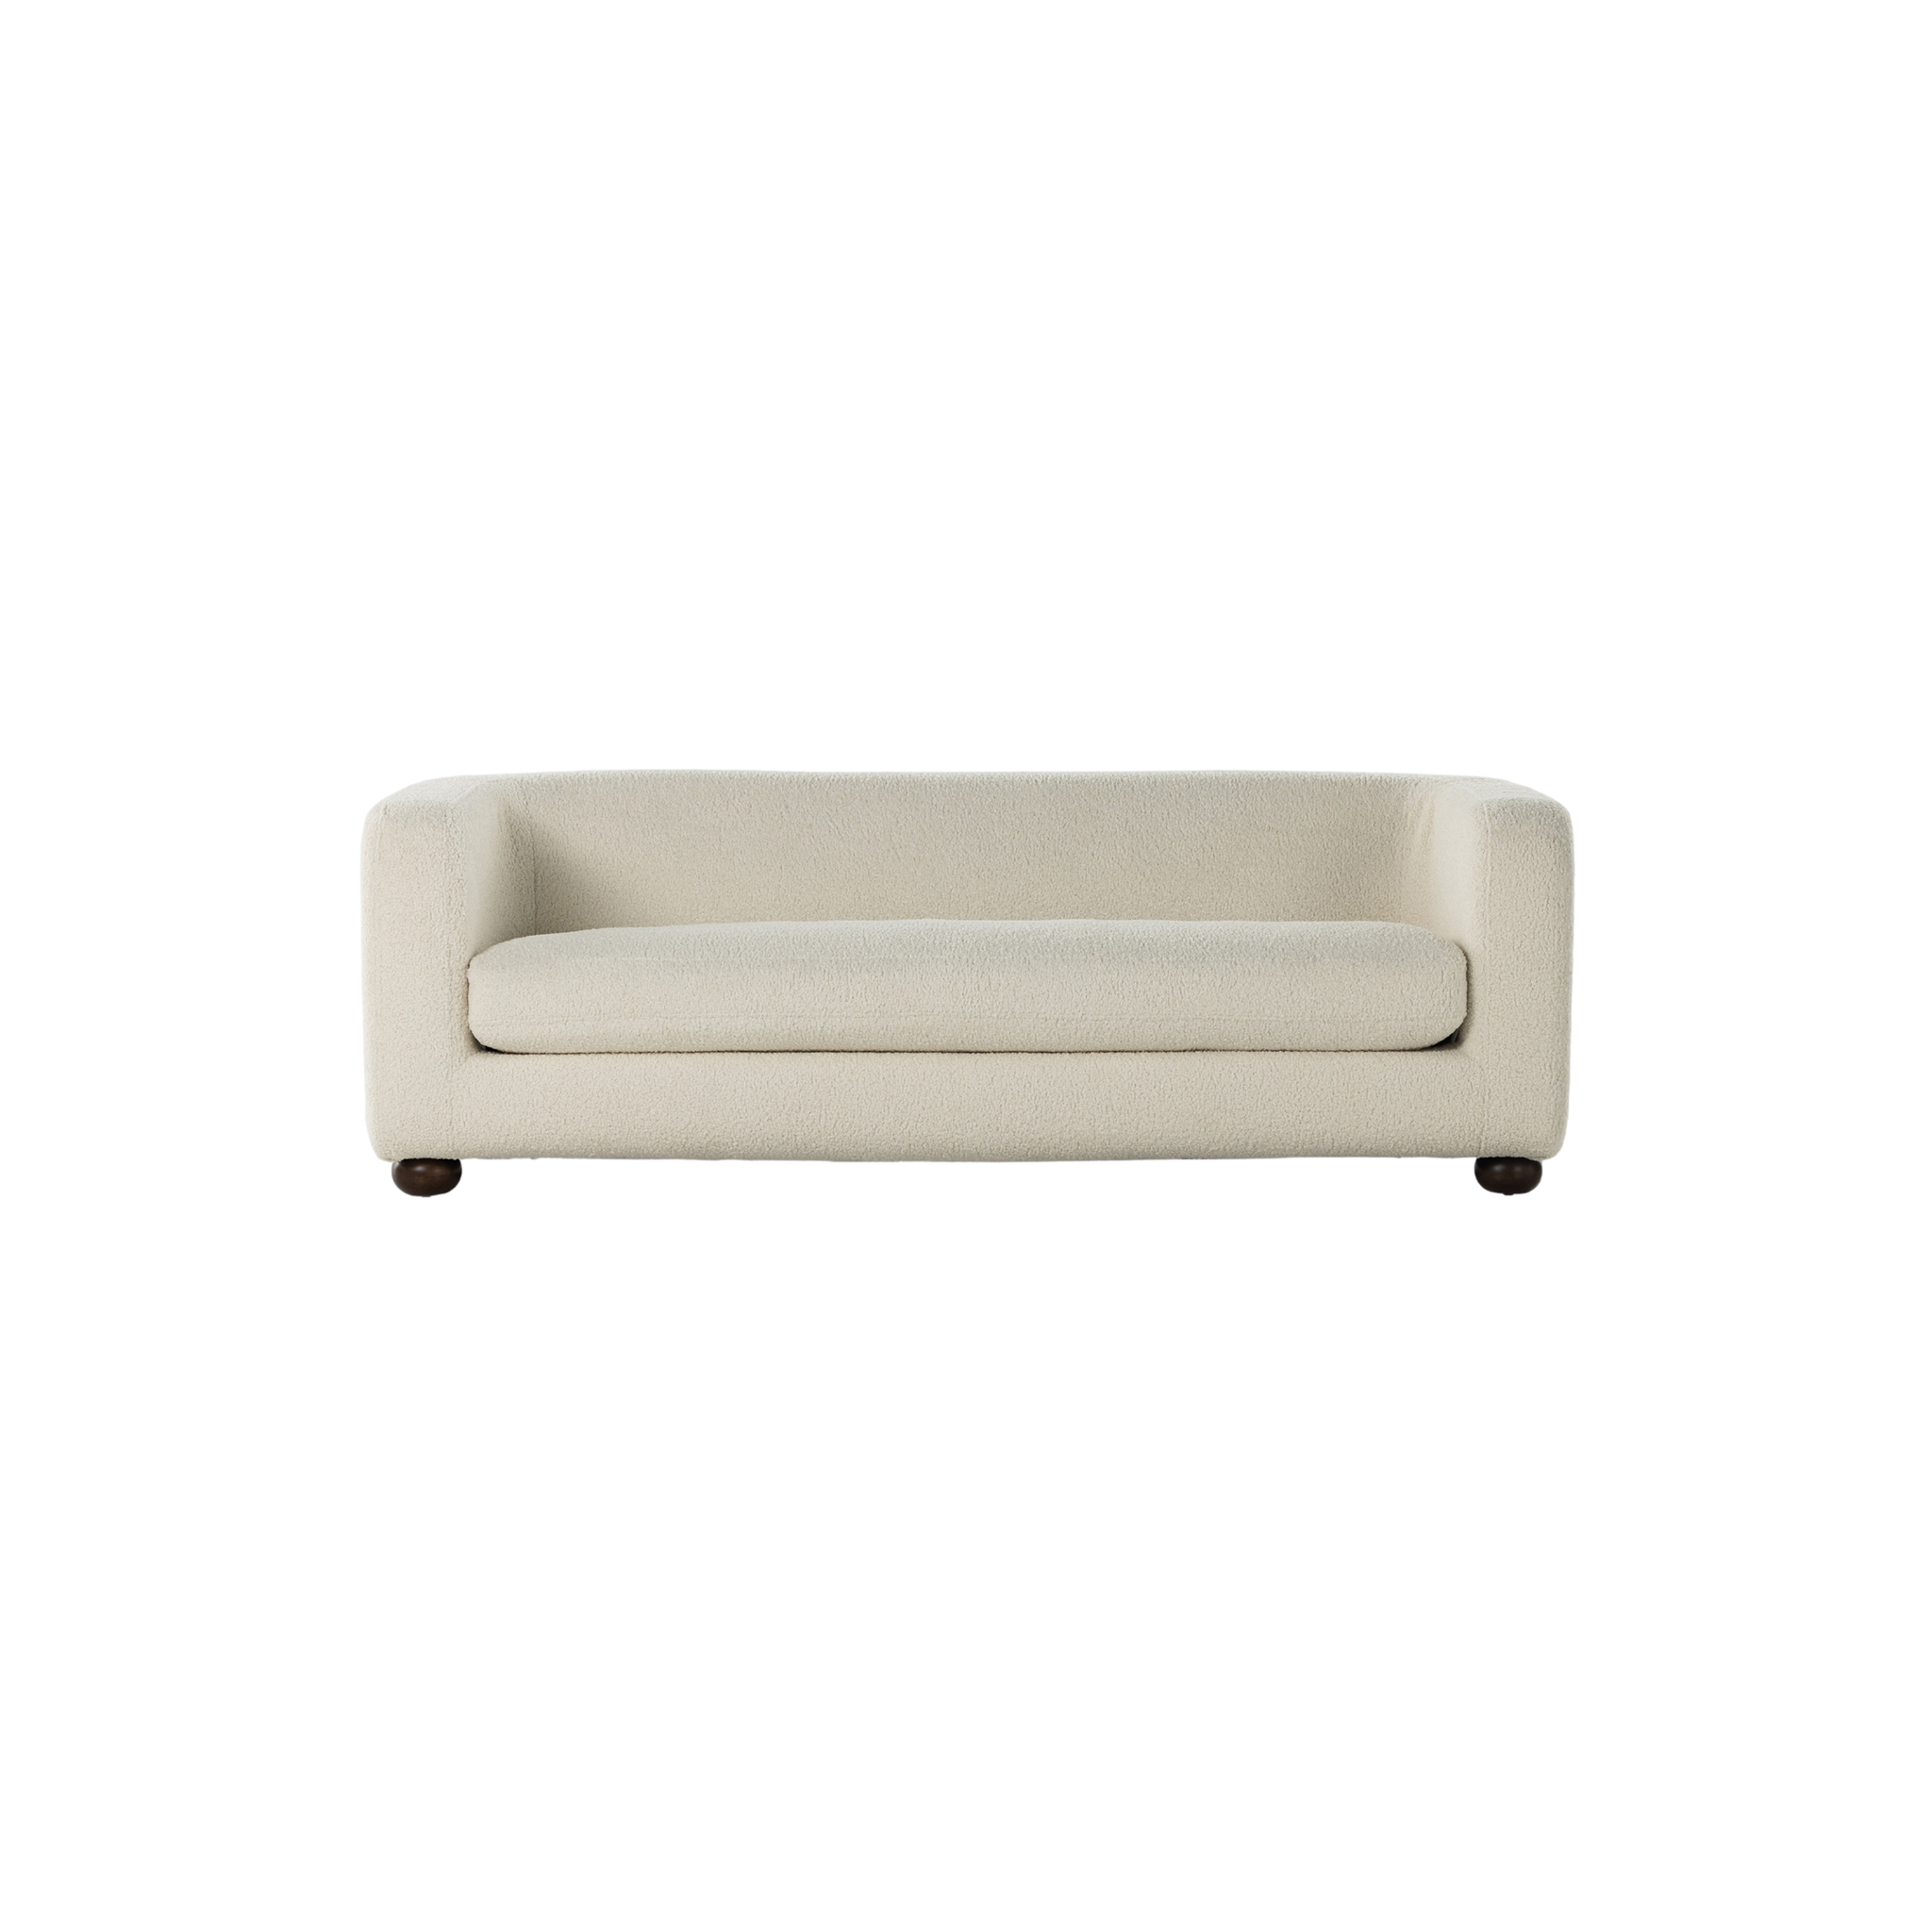 Gidget Sofa in Sheepskin Natural